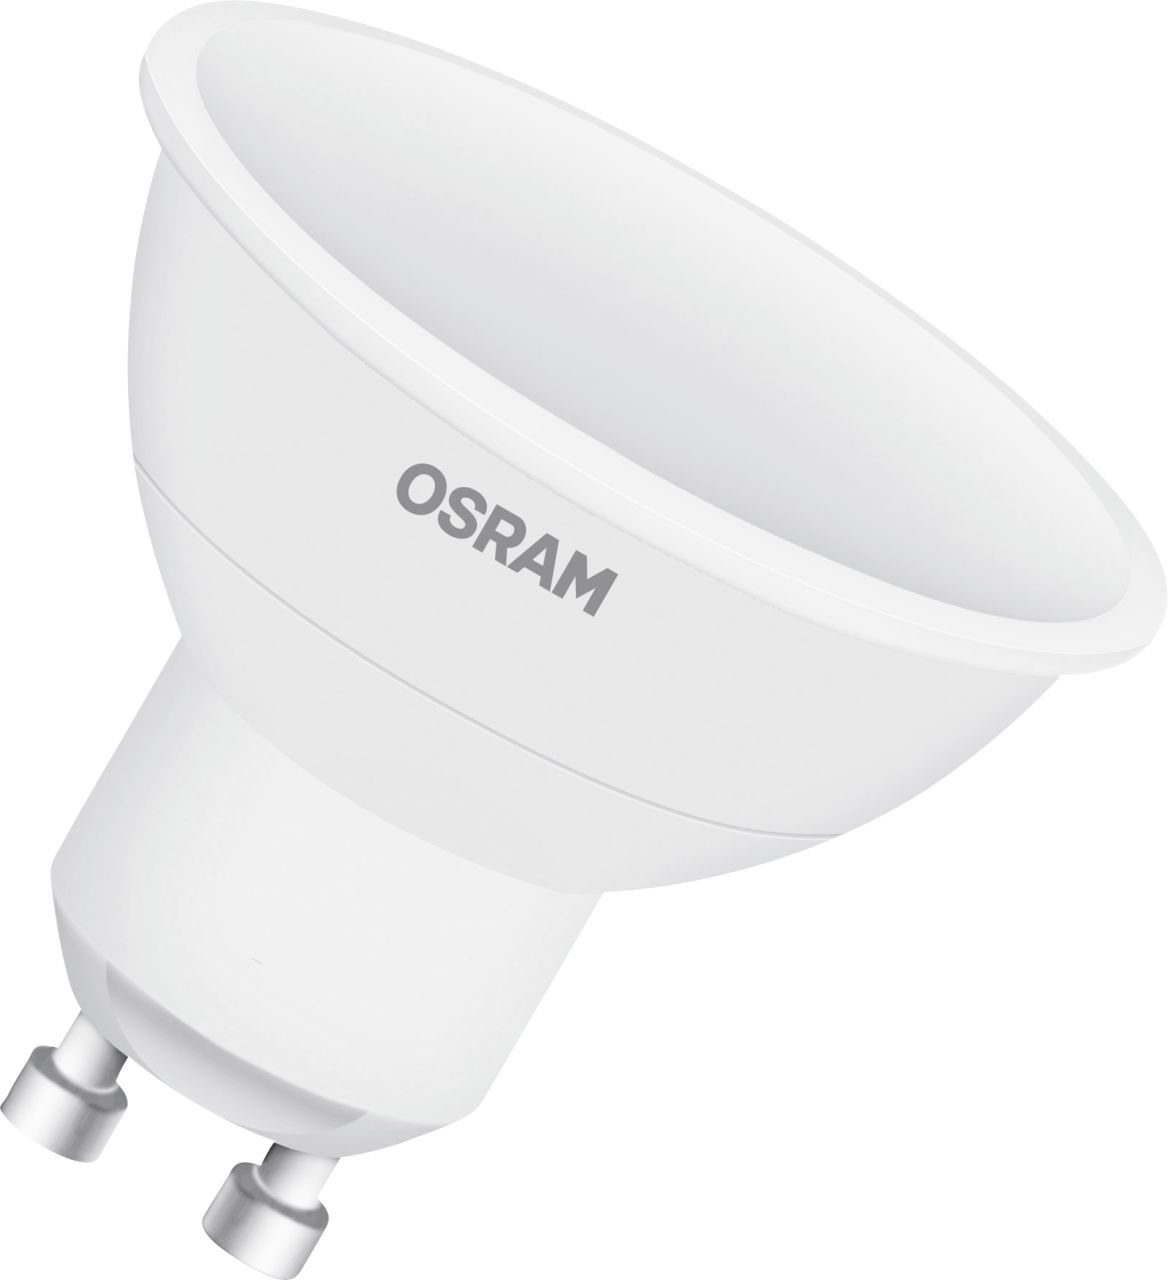 Osram Osram LED Reflektor Star GU10 4,5W warmweiß, bunt, LED-Leuchtmittel,  Dimmbar nicht Smart Home-fähig